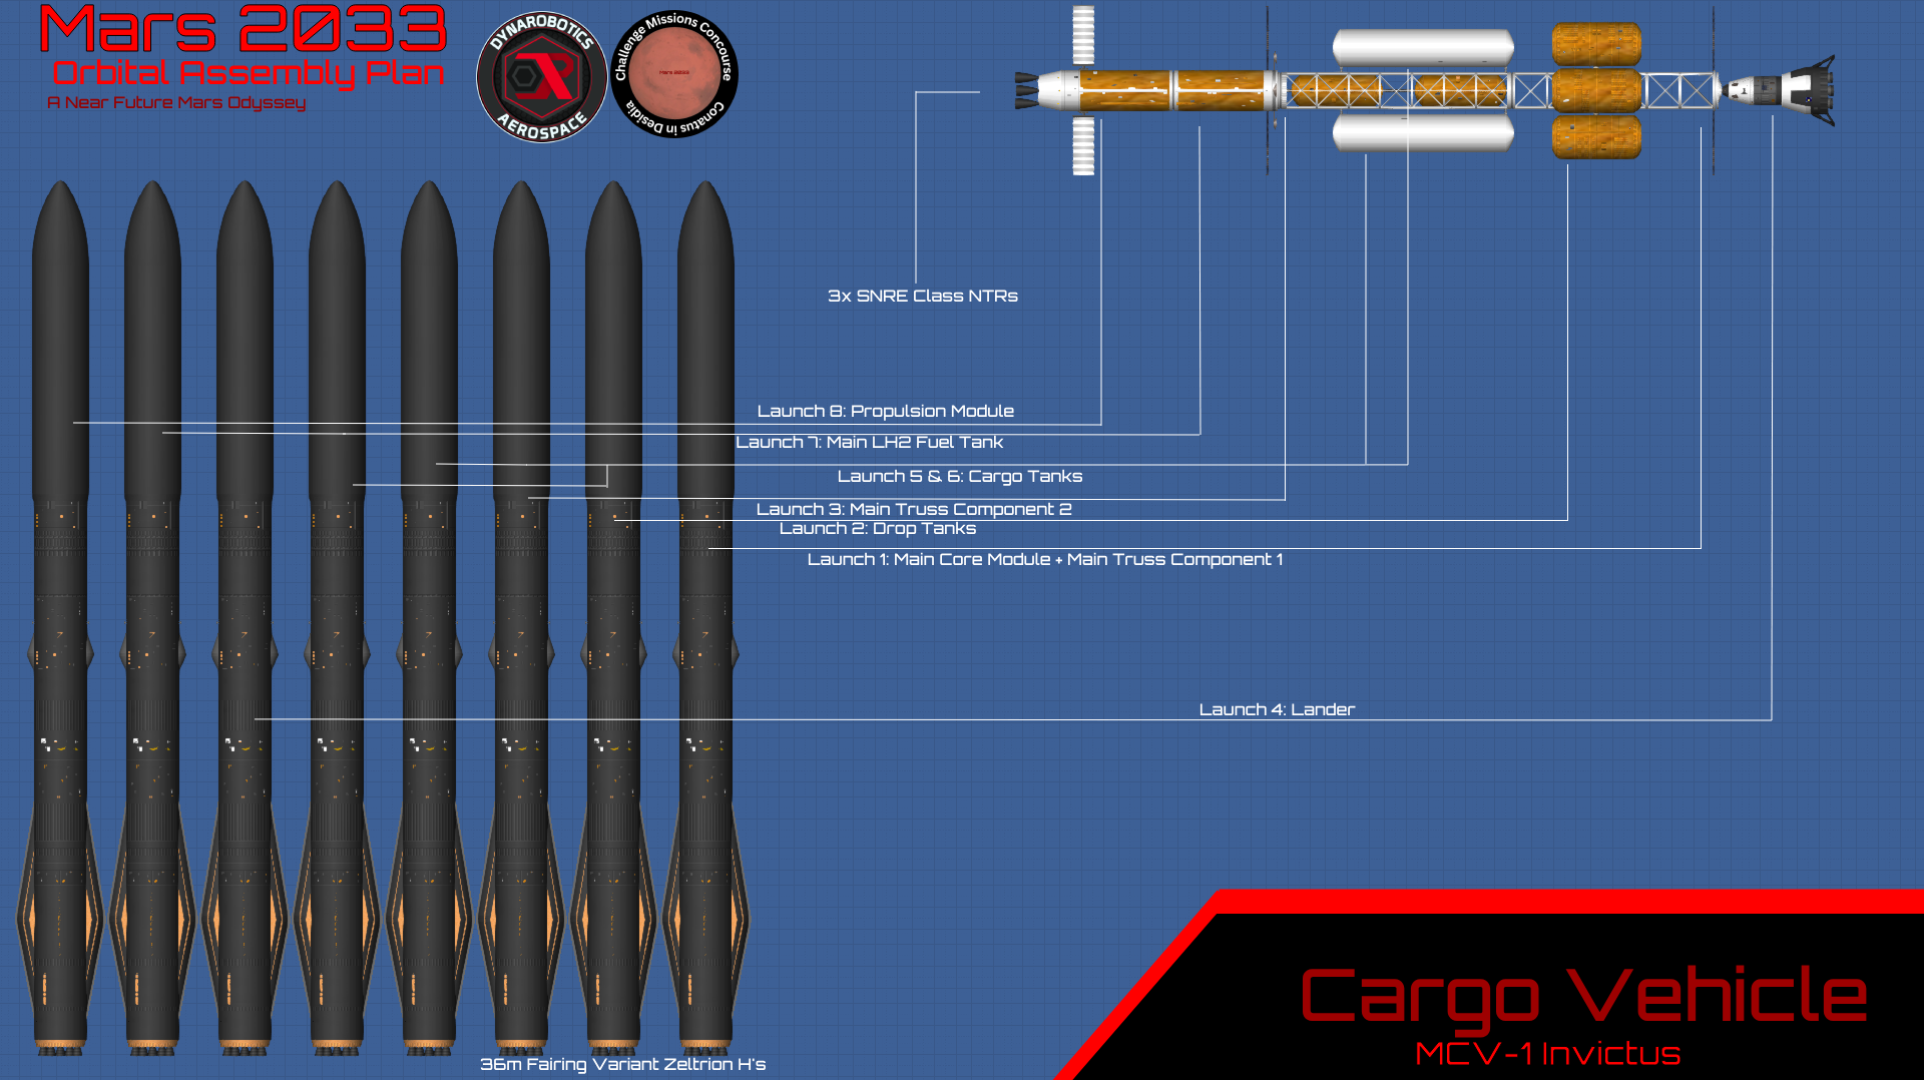 Mars_2033_Cargo_Vehicle_Plan.png